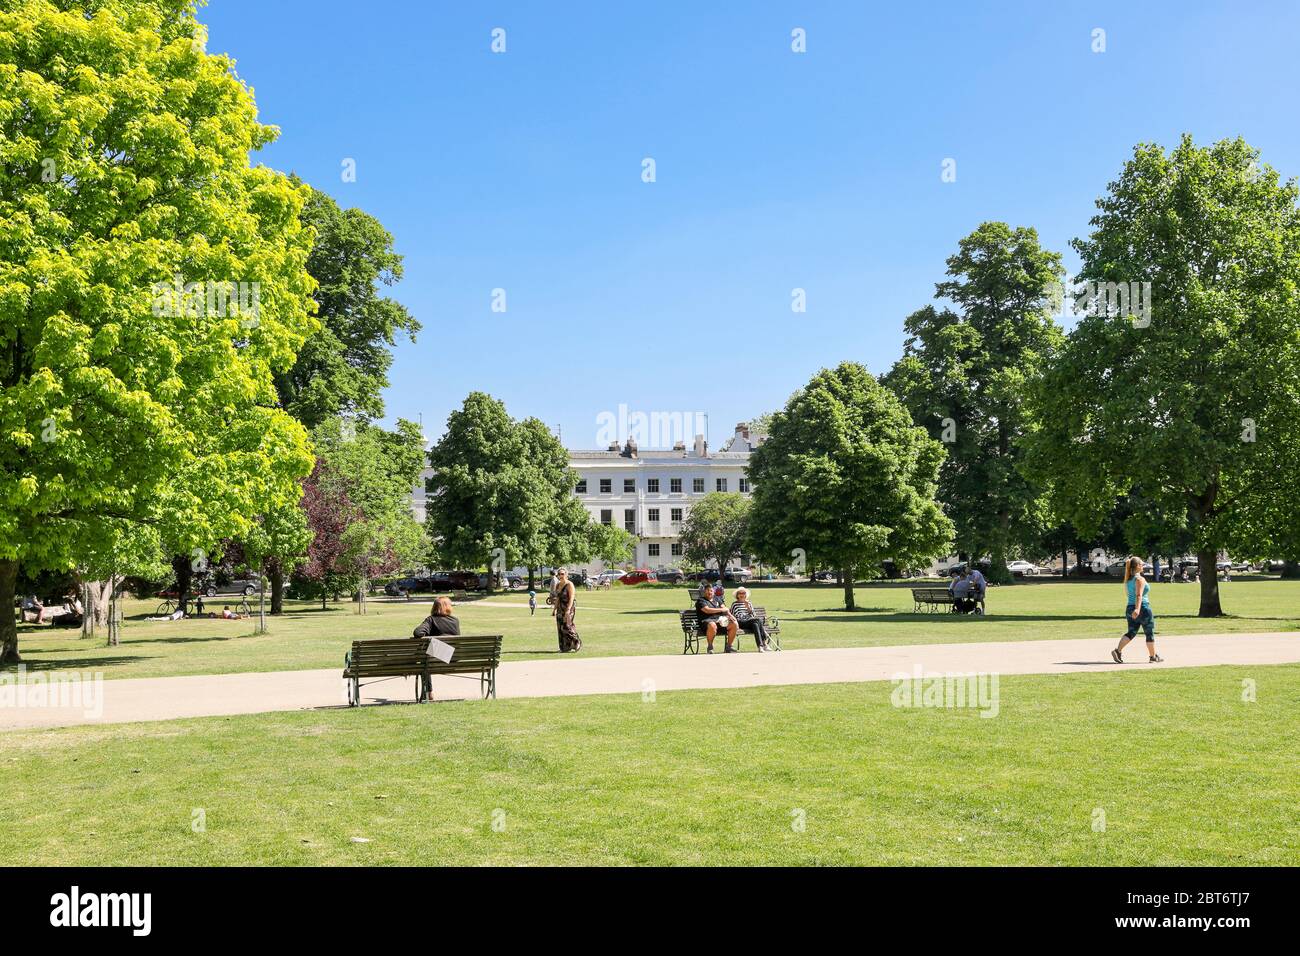 Menschen, die öffentlichen Parkflächen im Freien genießen, nachdem die gemessene soziale Distanz während der Sperrung aufgrund des Coronavirus-Ausbruchs am 21. Mai 2020 nachgelassen hat Stockfoto